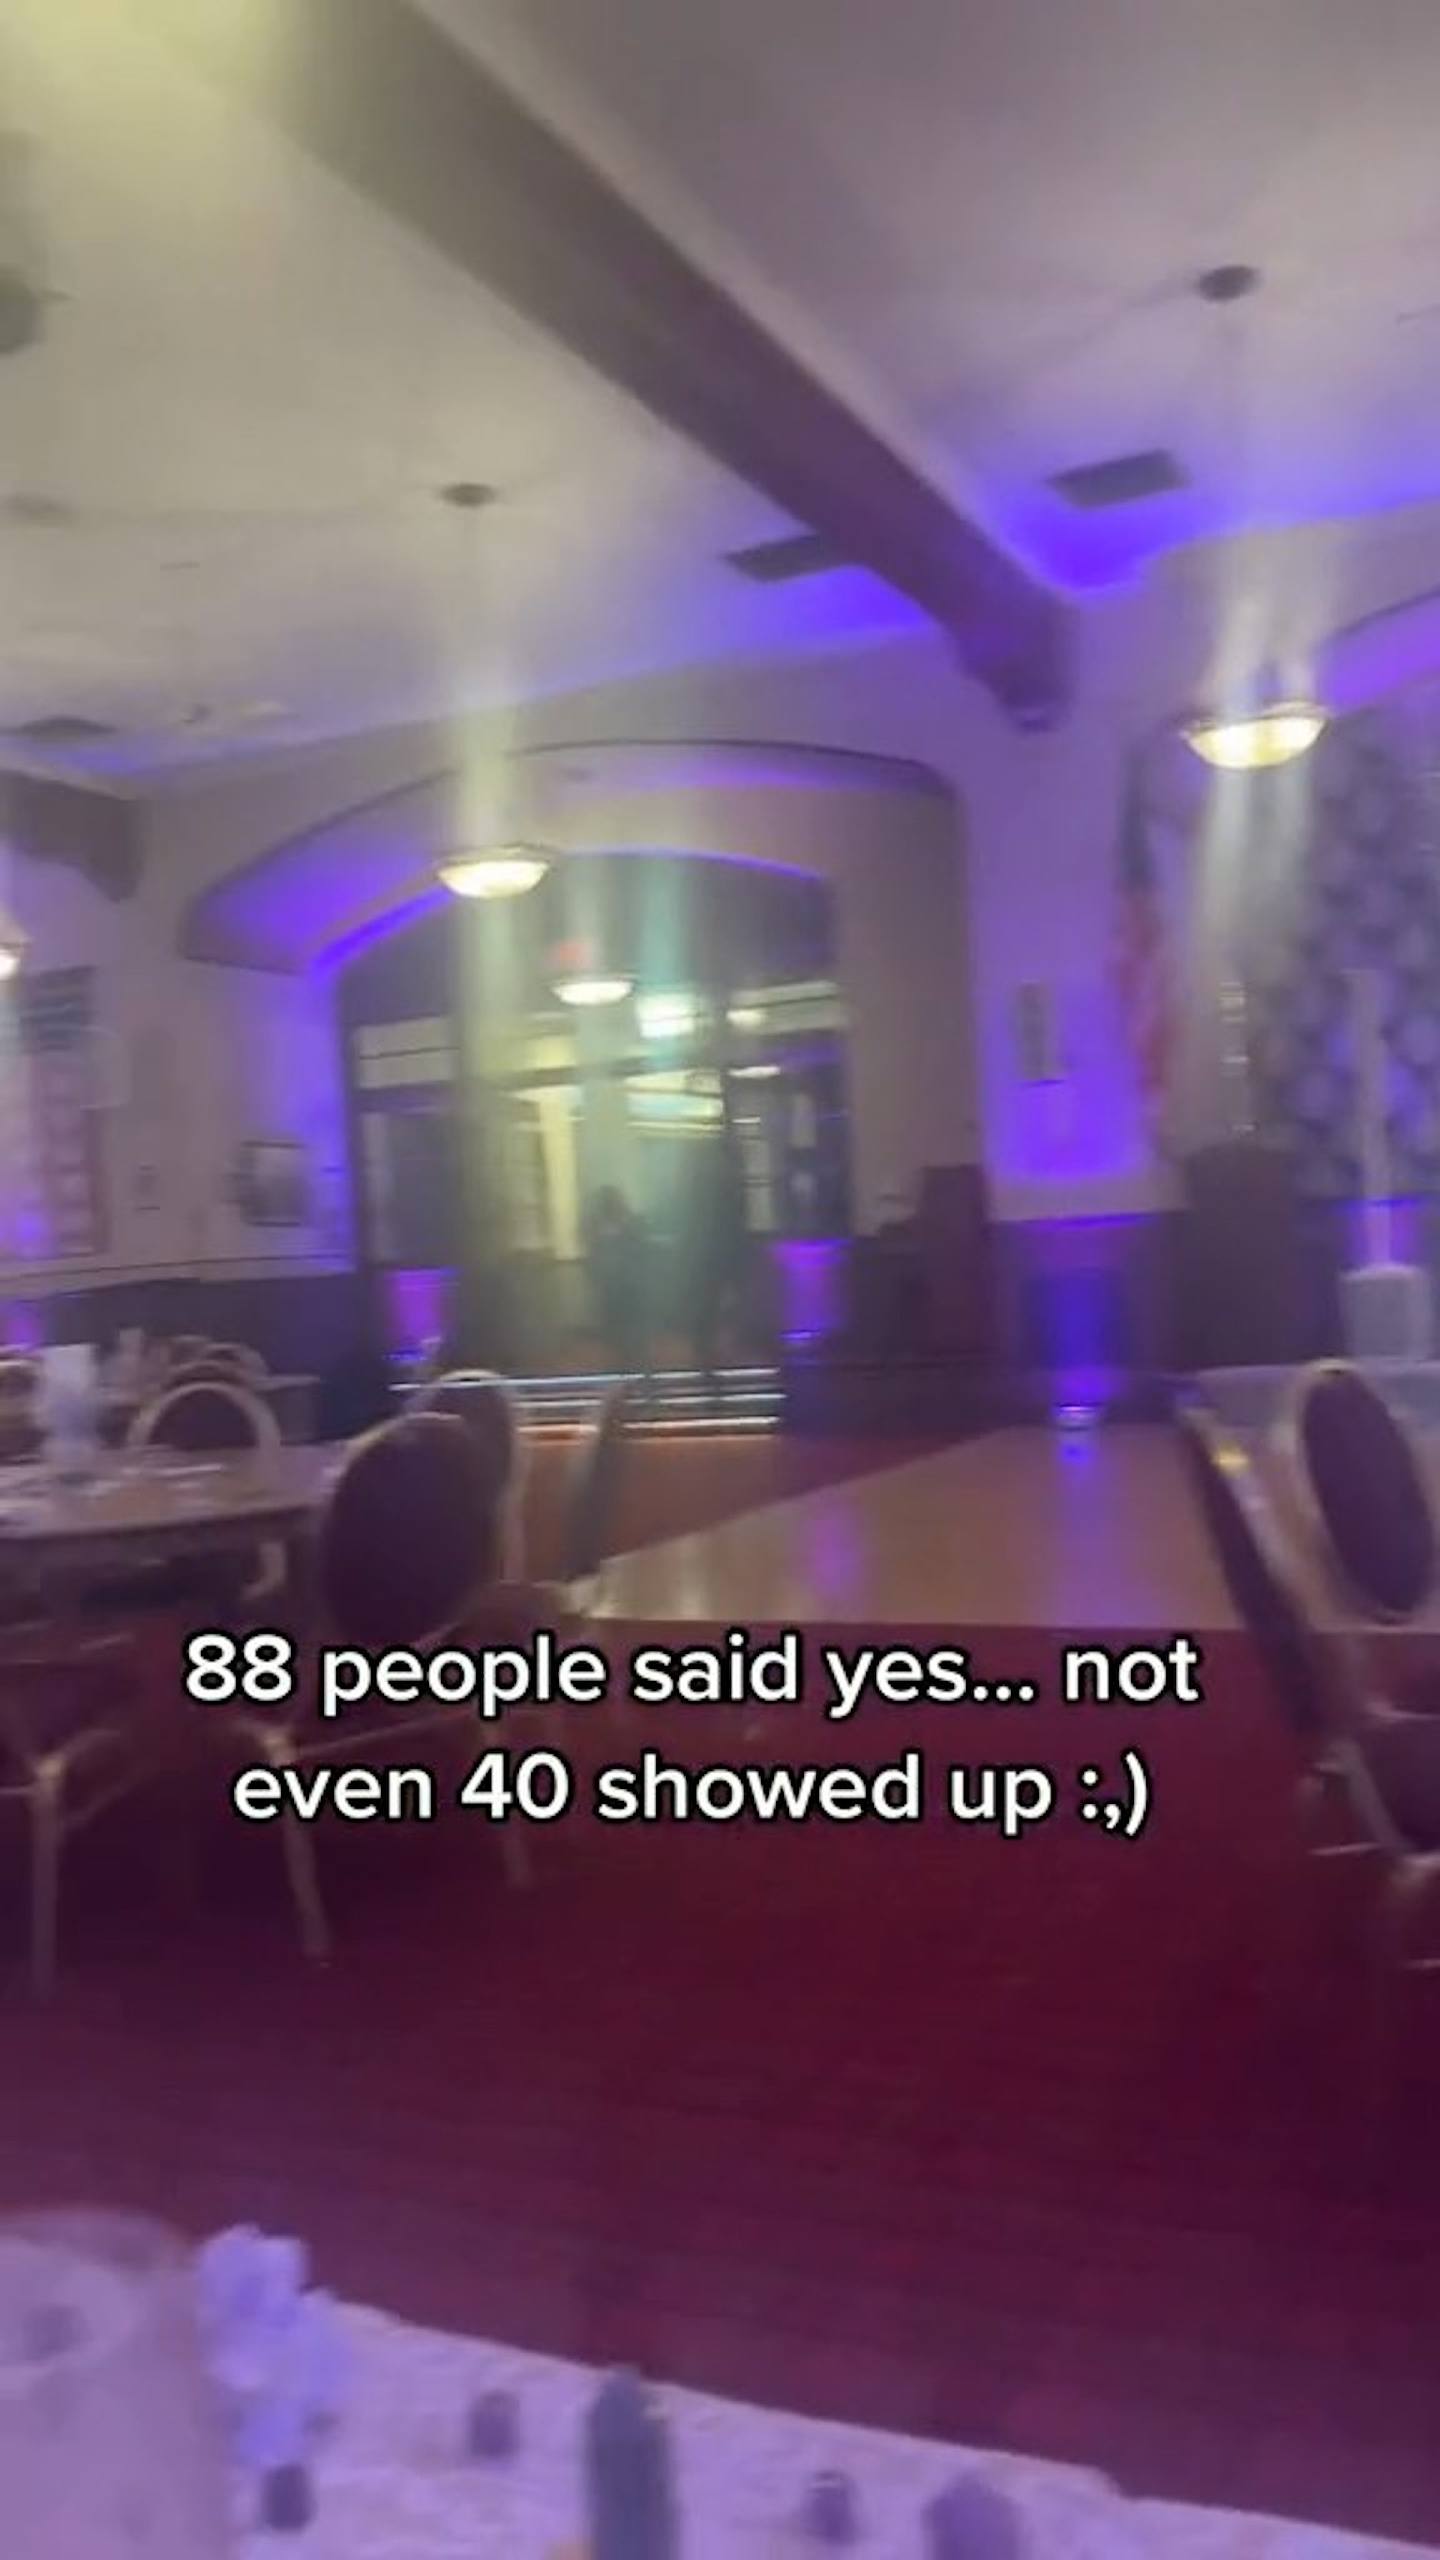 從格雷上載到TikTok的多段影片見到，婚禮現場相當冷清，多張宴桌都沒有賓客。（影片截圖）